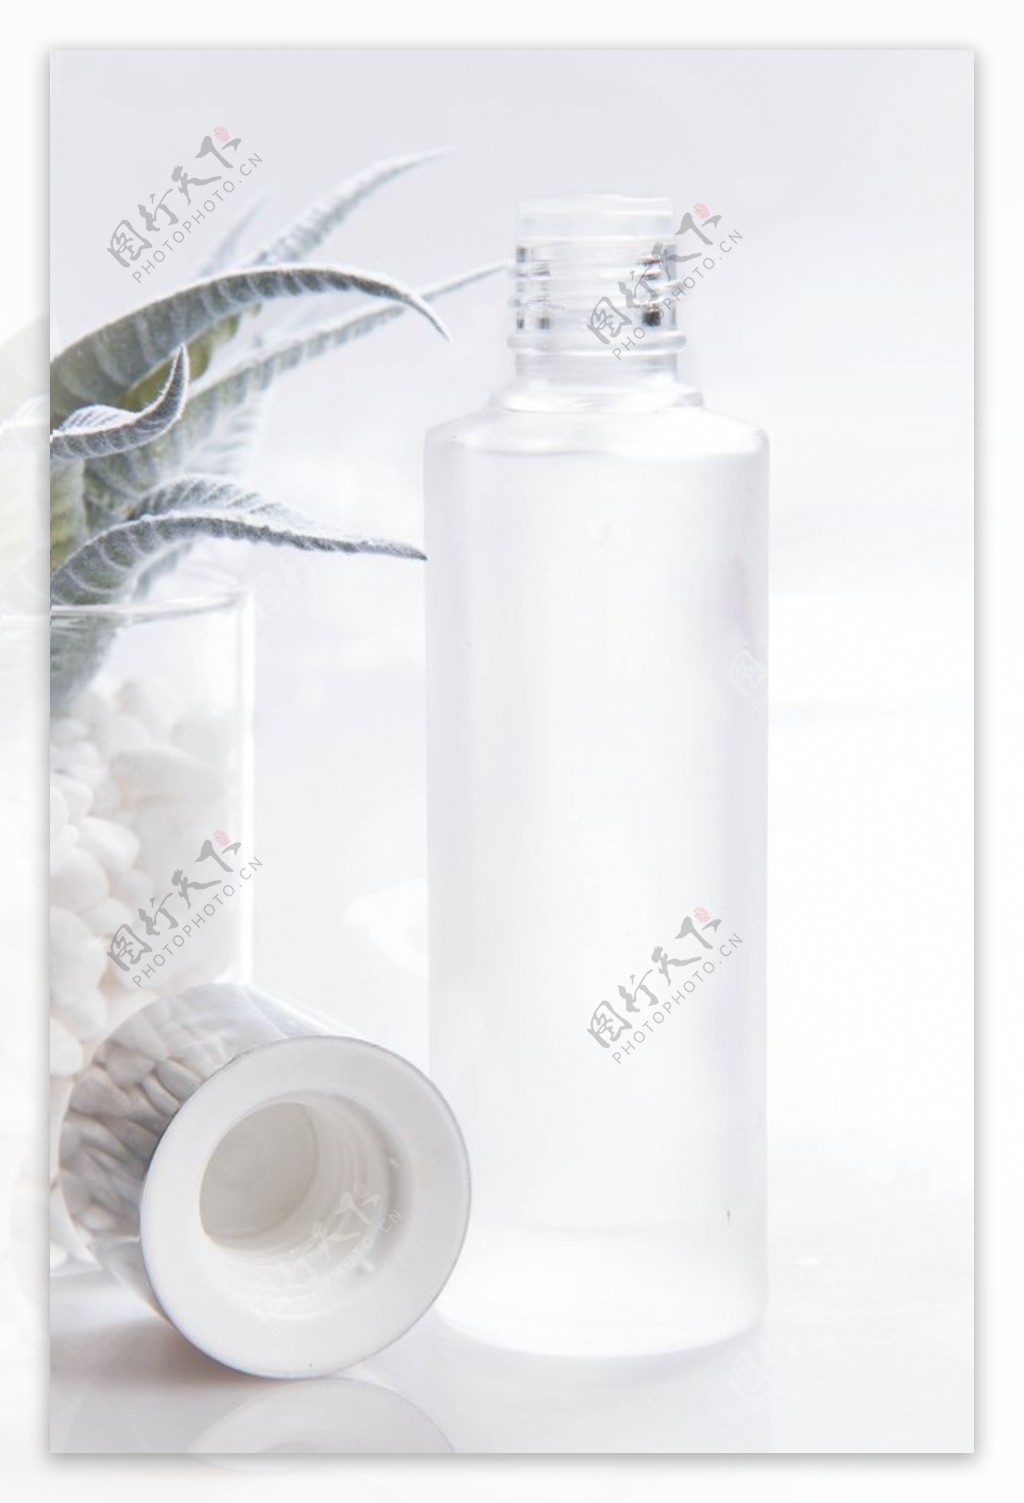 白色透明瓶子化妆品图片